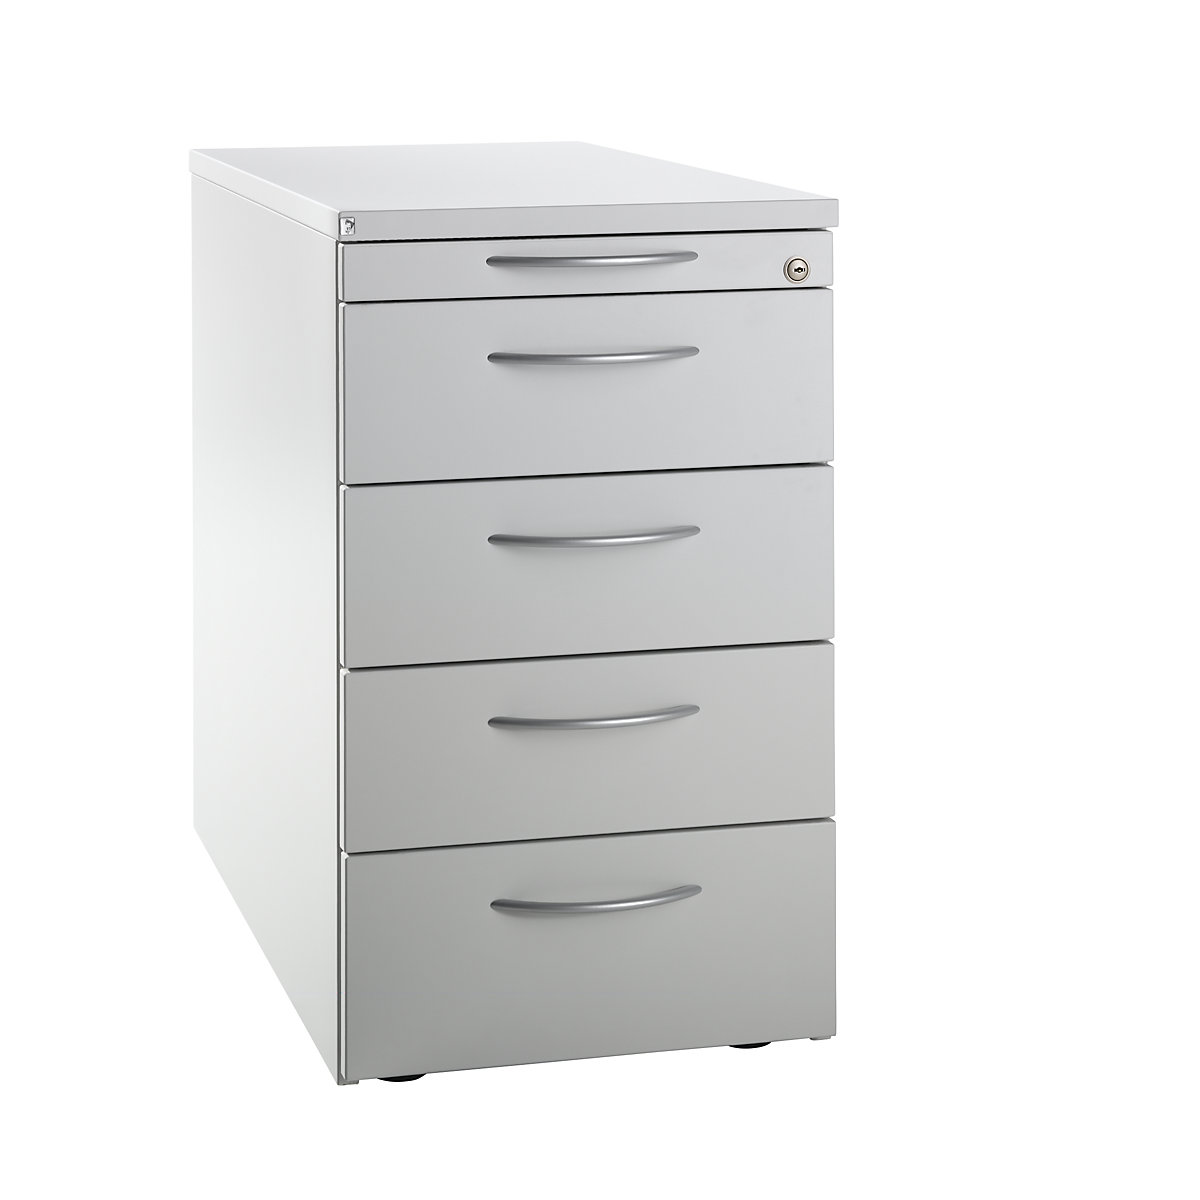 Fixed pedestal LENA, 1 utensil drawer, 4 drawers, height 720 mm, light grey-5